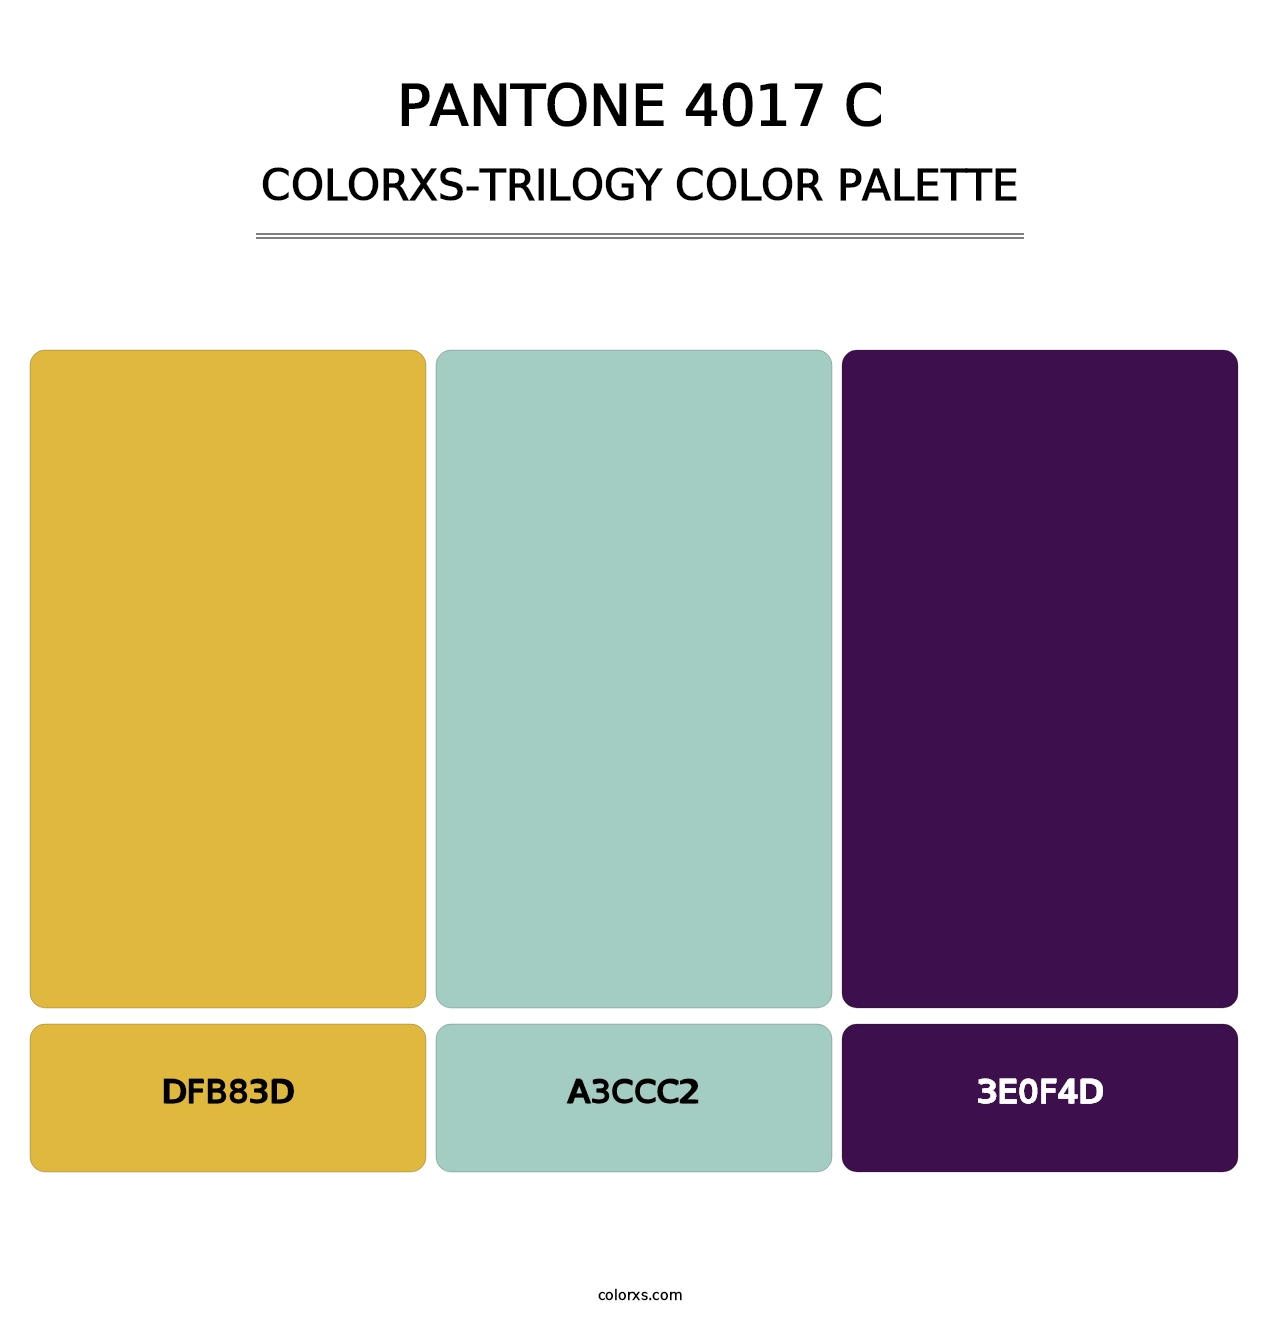 PANTONE 4017 C - Colorxs Trilogy Palette